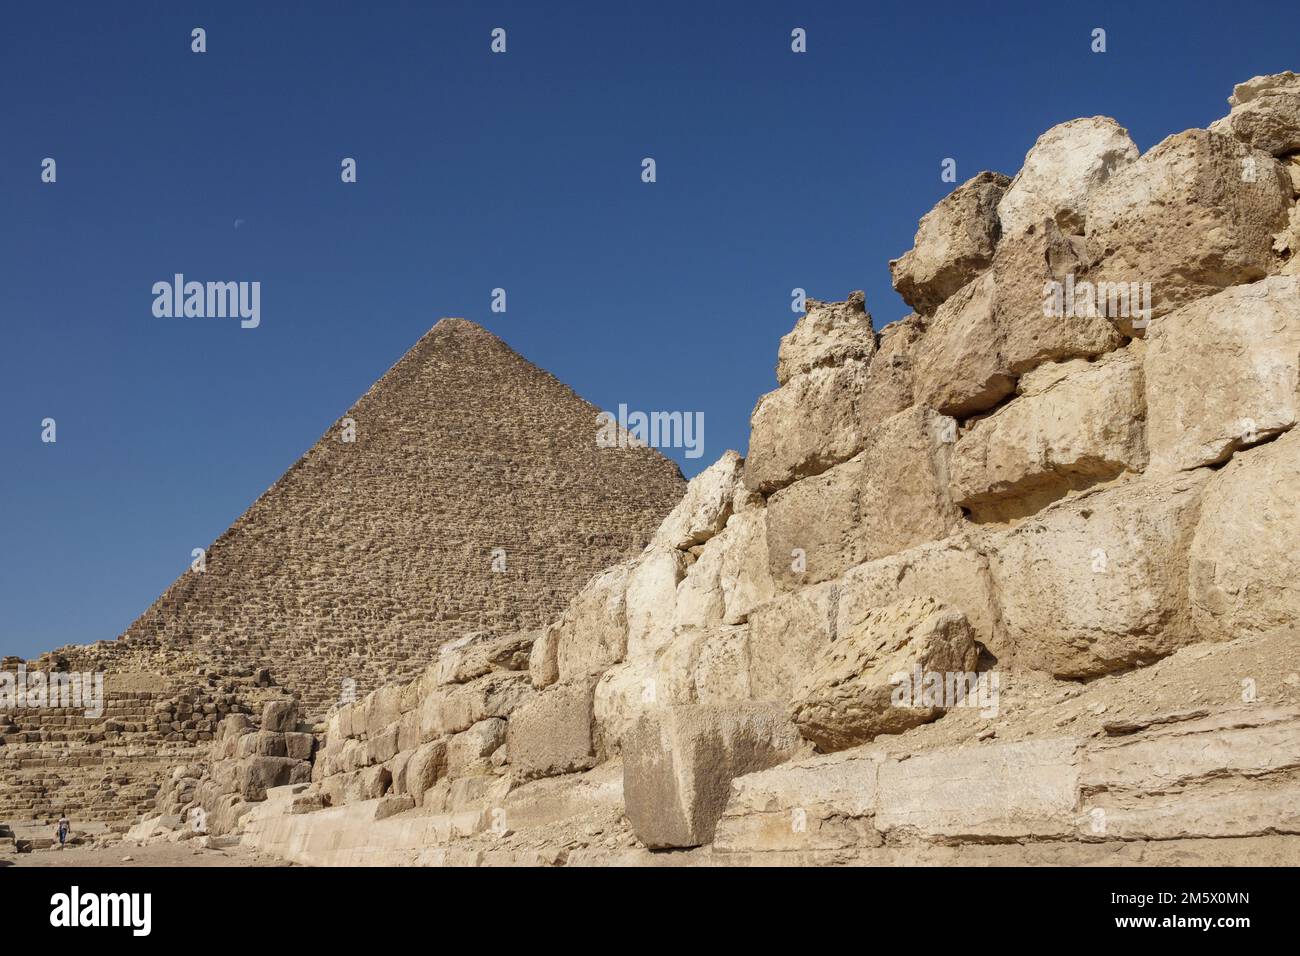 Pyramides de Gizeh sur le plateau de Gizeh, le Caire, Égypte Banque D'Images